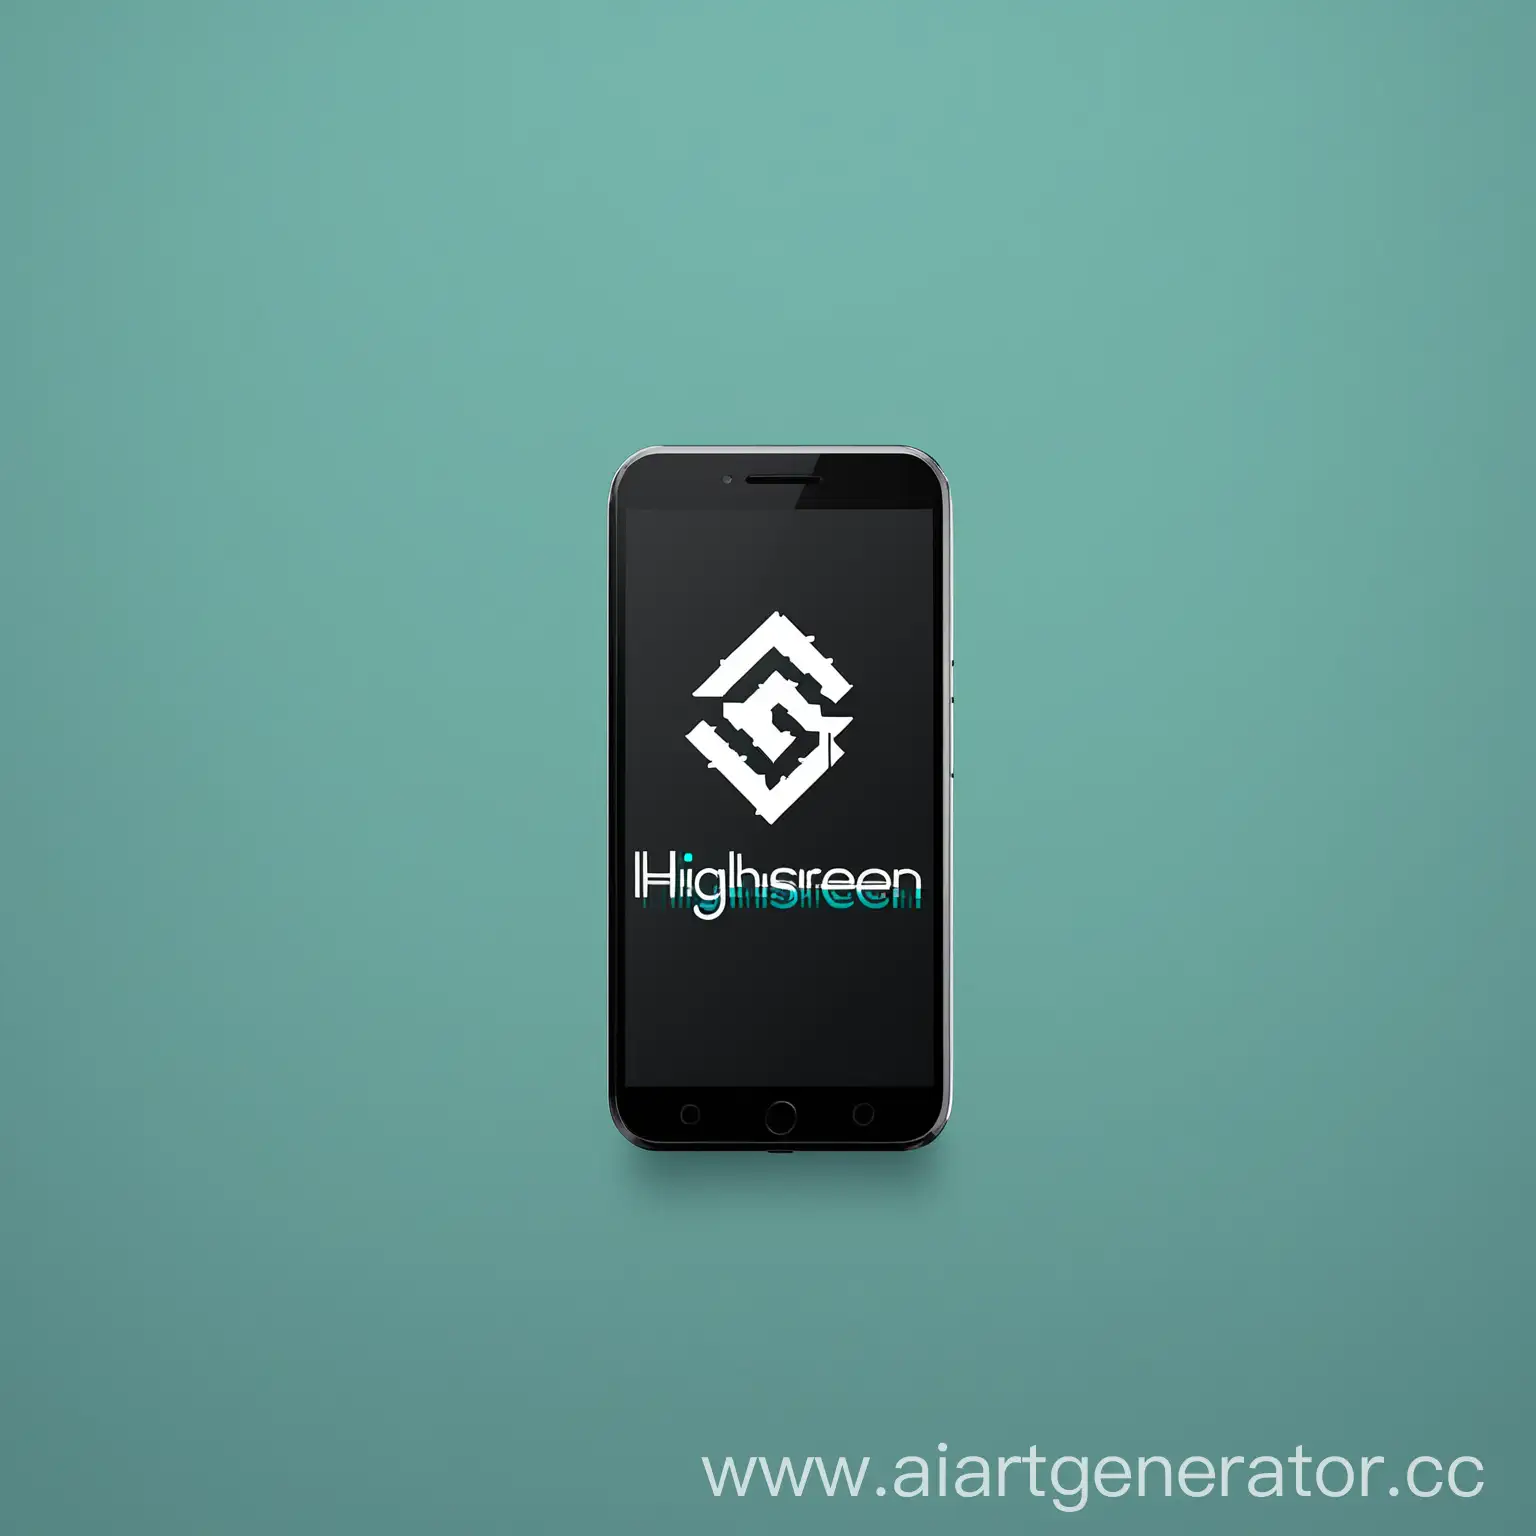 простой минималистичный логотип для смартфона с названием  "Highscreen", который предназначен для творческих людей 